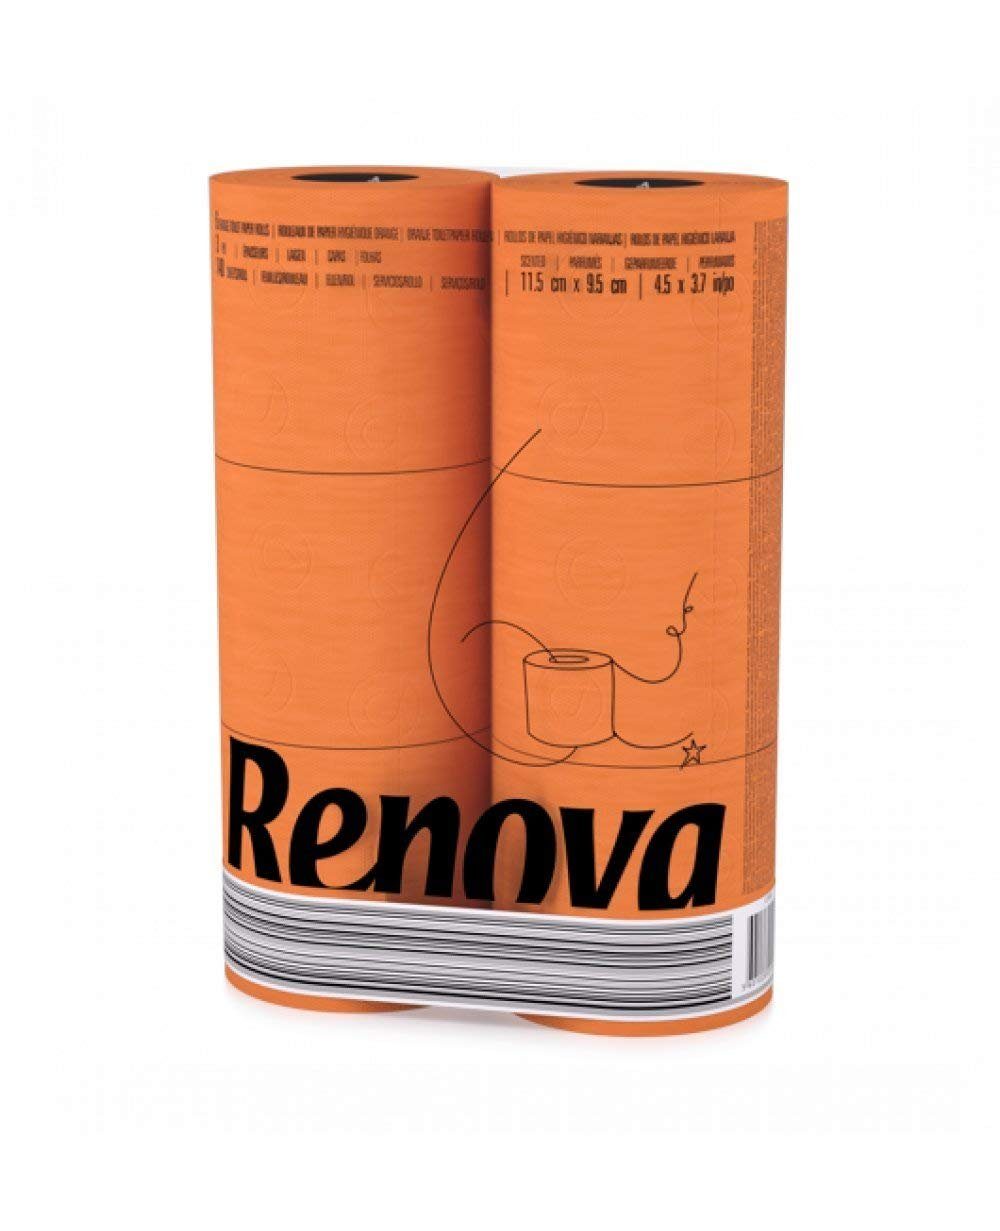 Renova Toilettenpapier RENOVA Oranges Toilettenpapier - ORANGE in Folie 6 Rollen